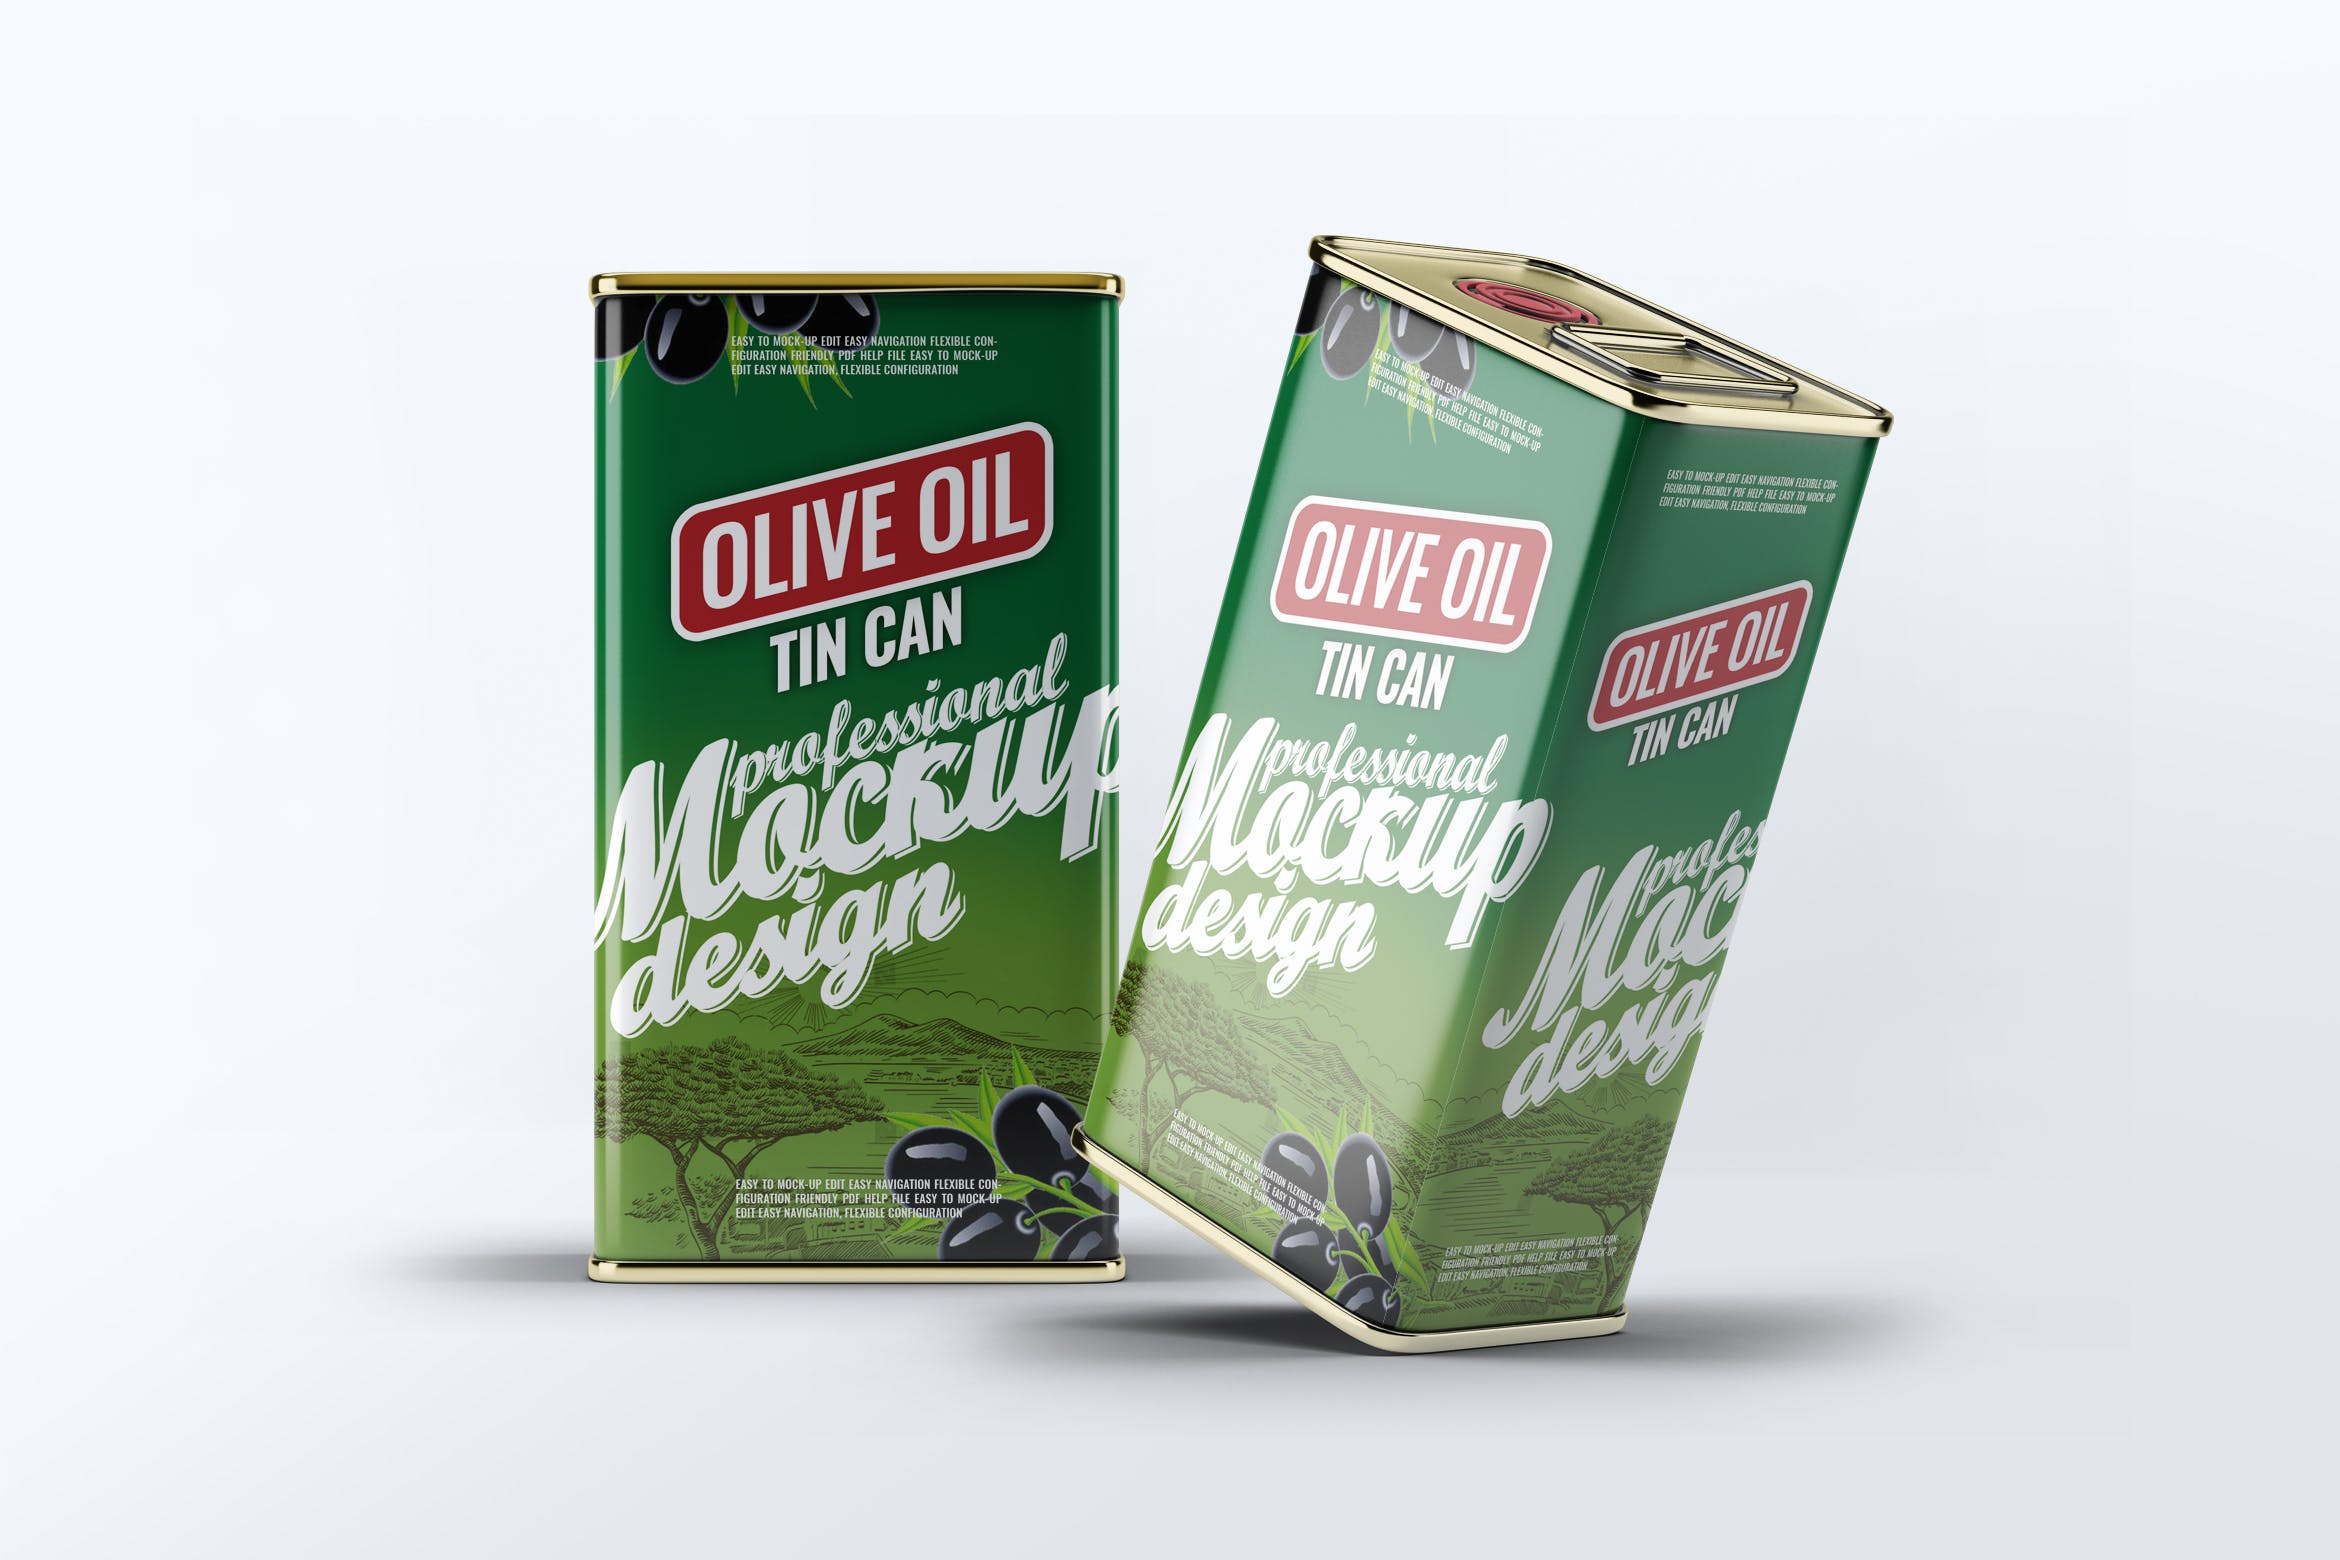 橄榄油罐头包装外观设计效果图非凡图库精选模板 Tin Can Olive Oil Mock-Up插图